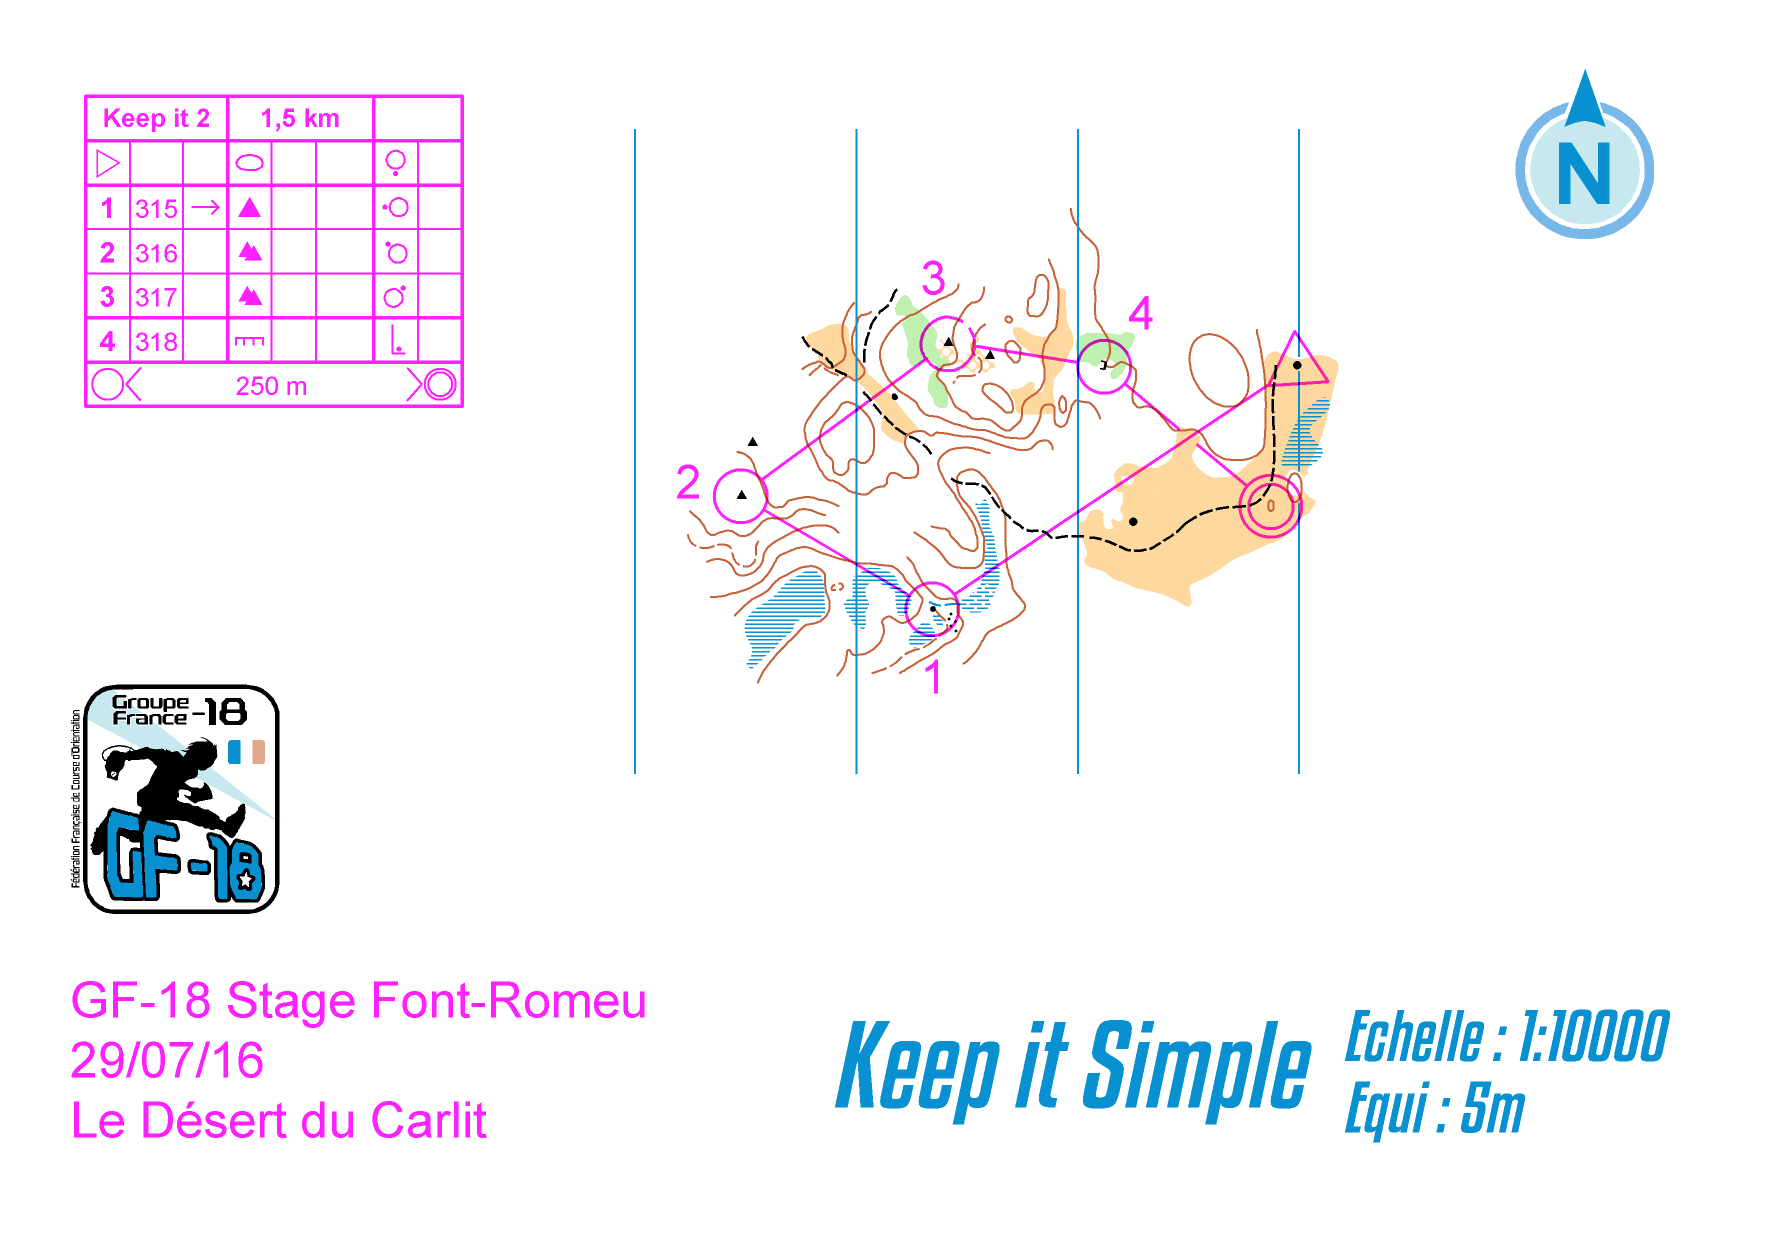 keep it simple 2 (2016-08-28)